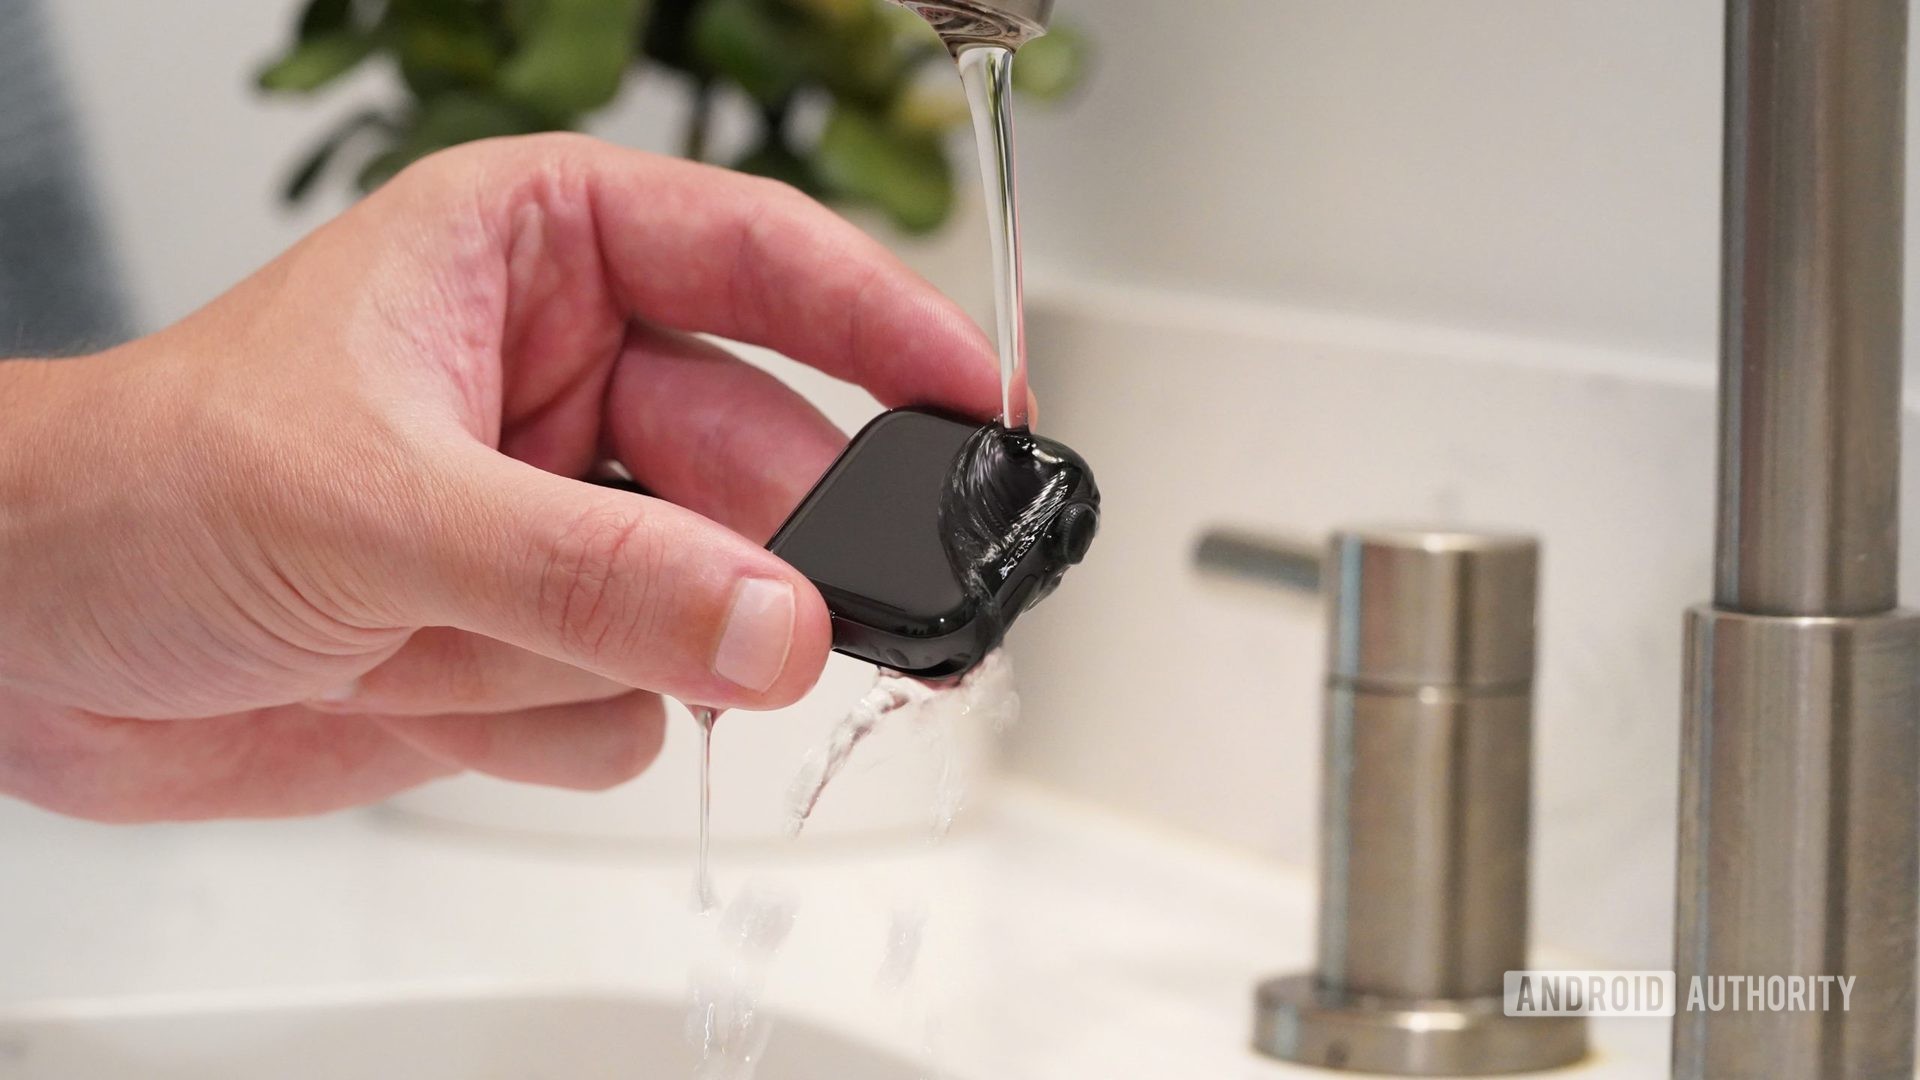 Une main masculine tient l'Apple Watch Series 6 sous de l'eau tiède à faible débit pour nettoyer l'appareil.